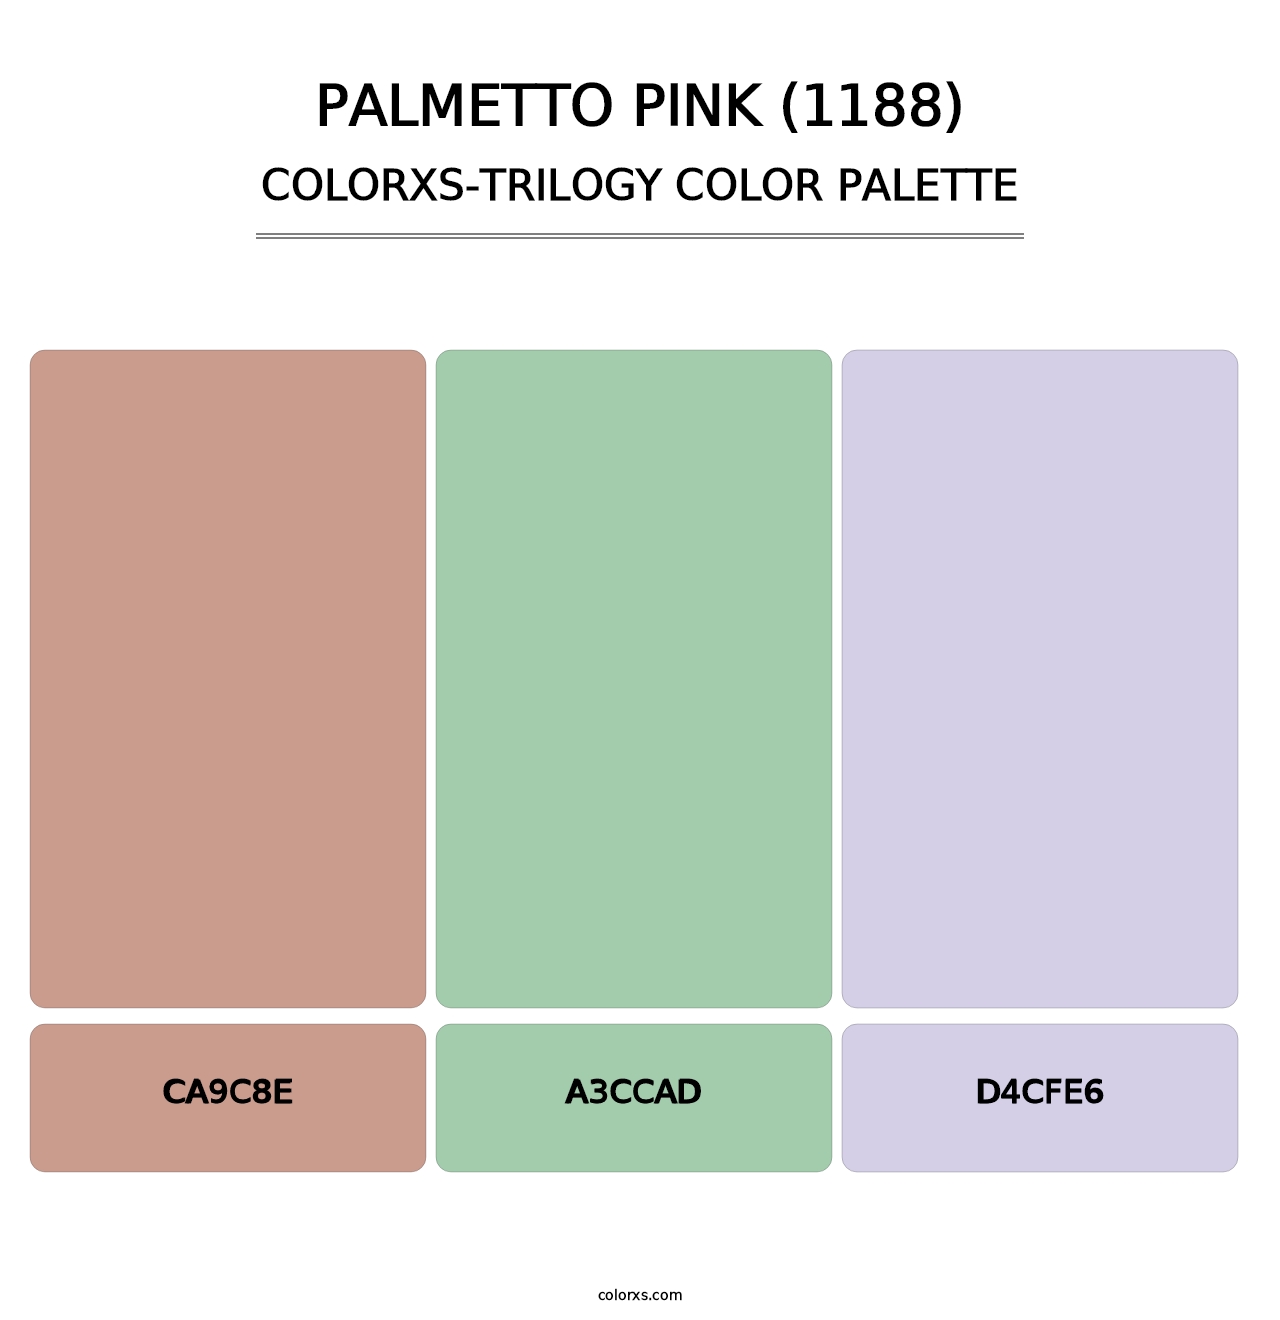 Palmetto Pink (1188) - Colorxs Trilogy Palette